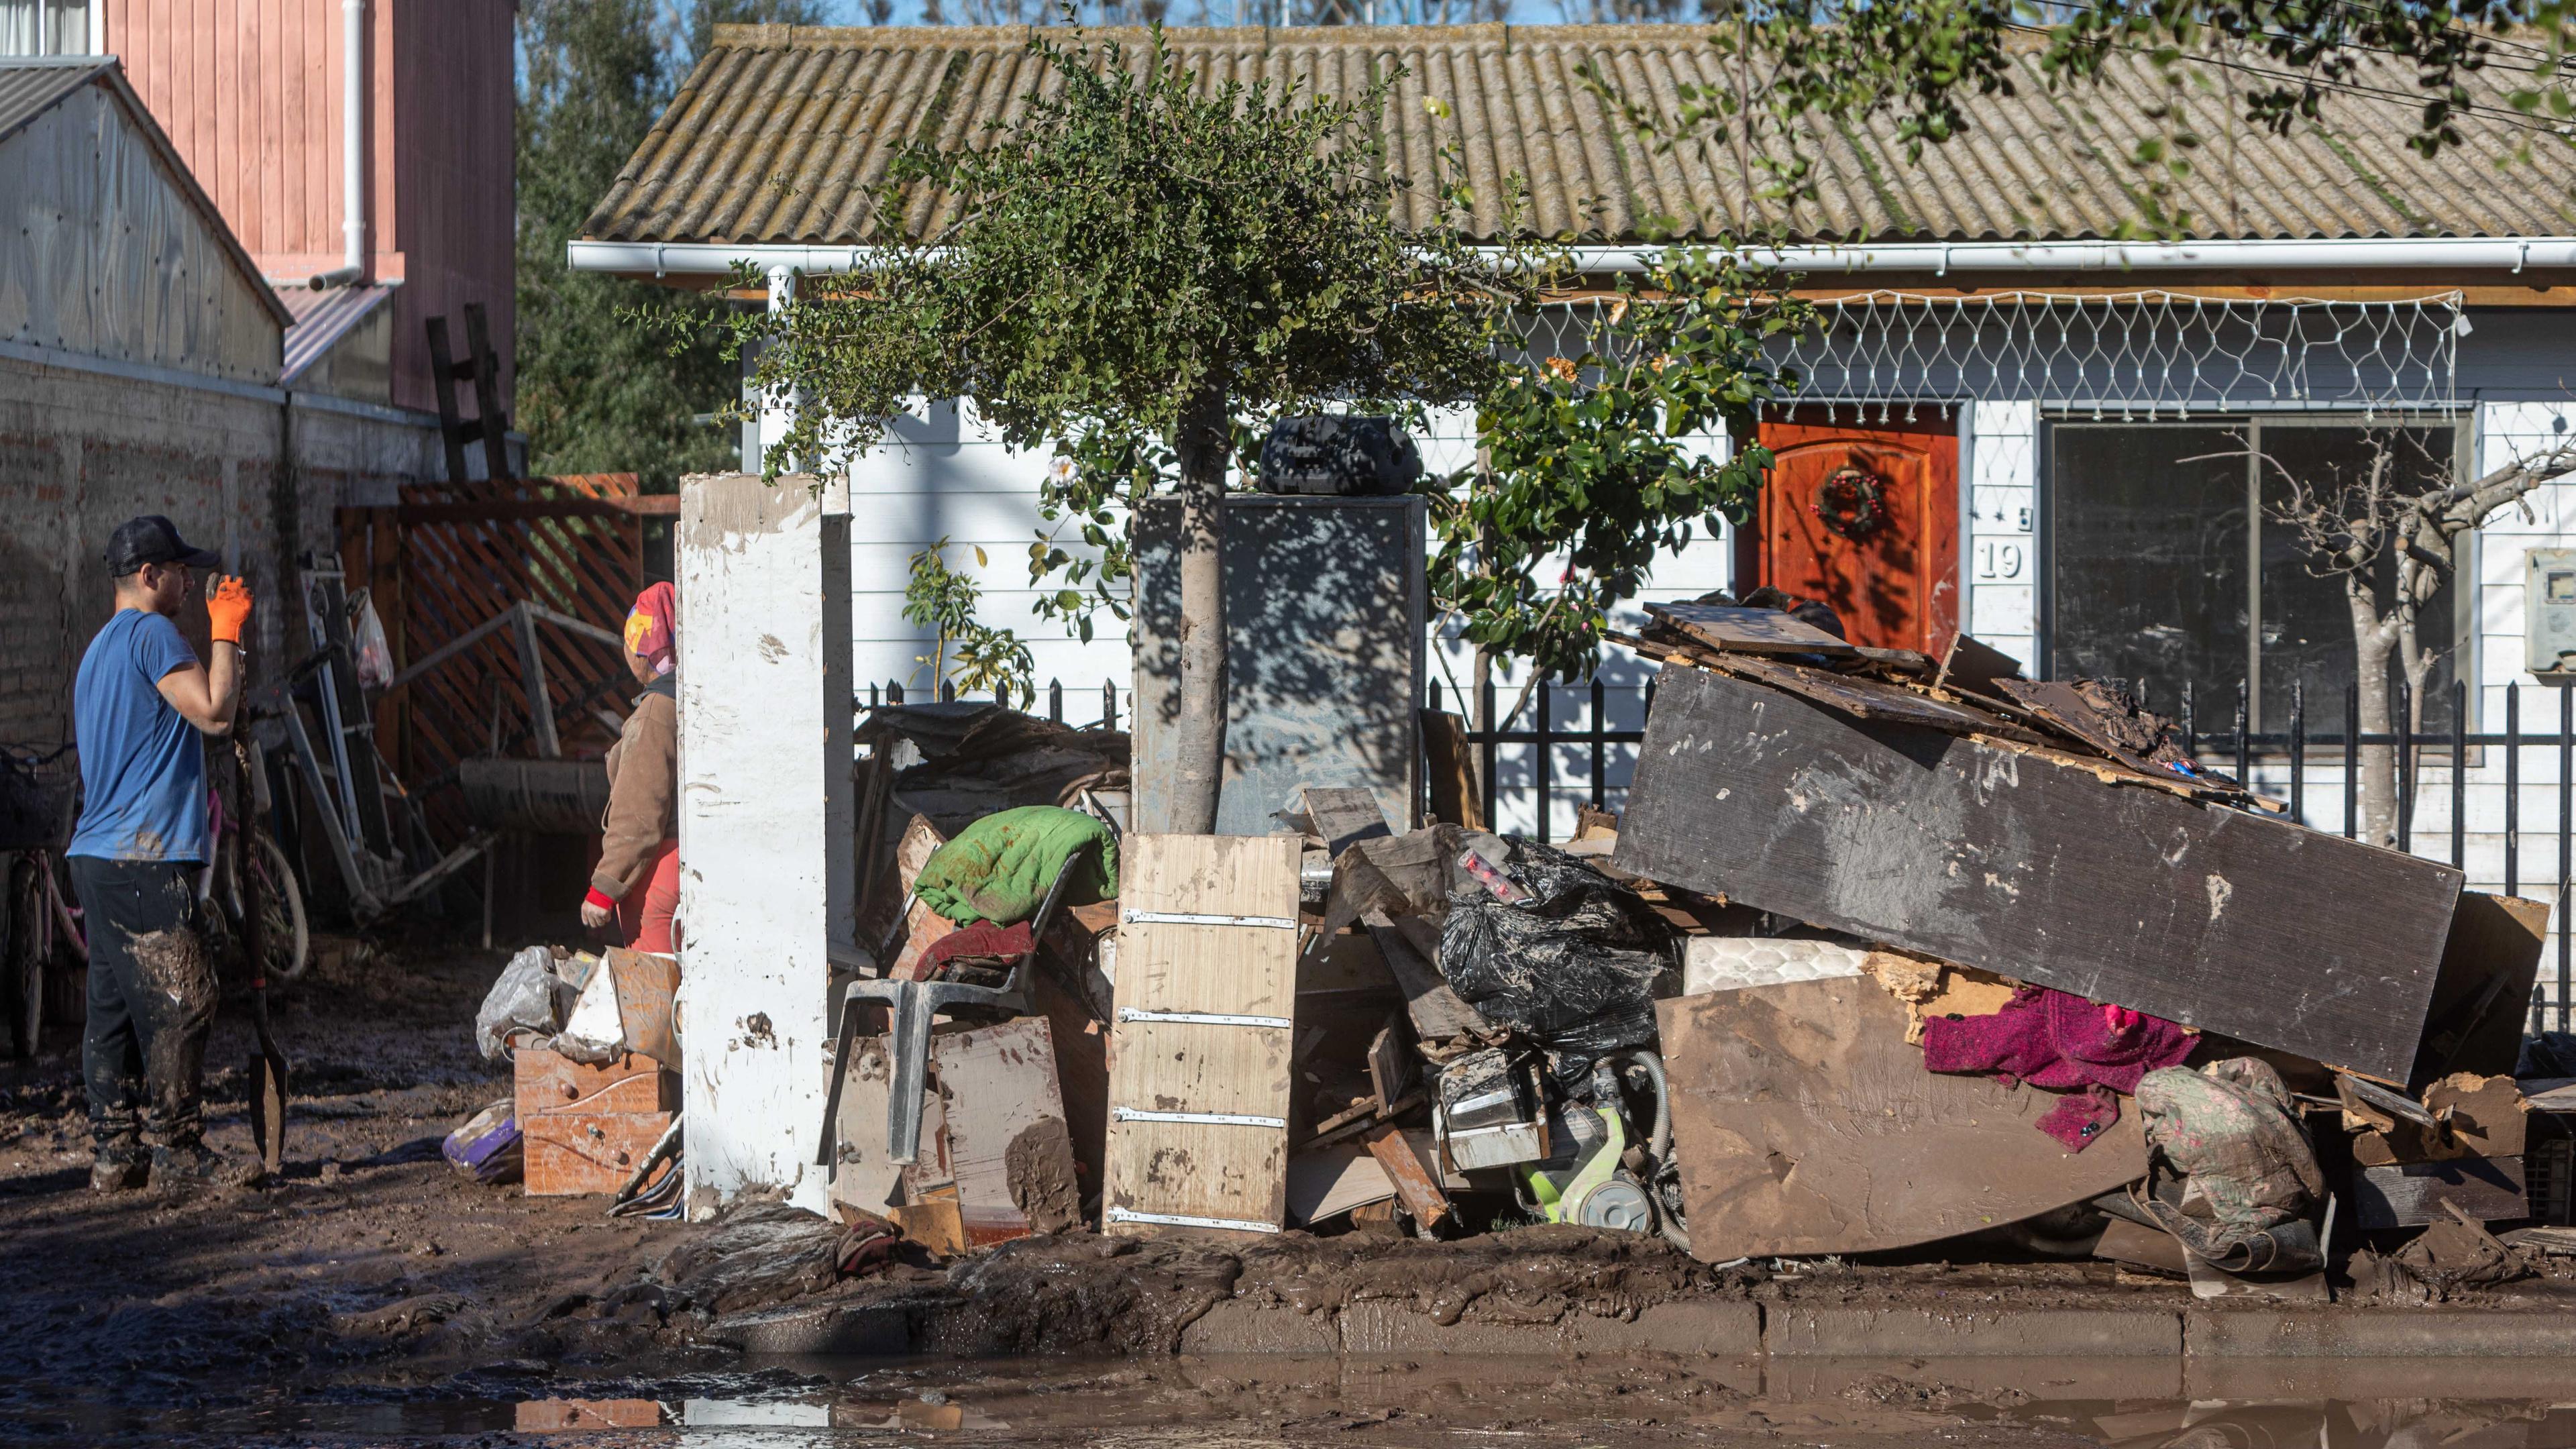 Trümmer auf der Straße nach einer Überschwemmung in Chile. Links im Bild Personen bei Aufräumarbeiten. Im Hintergrund ein Haus.